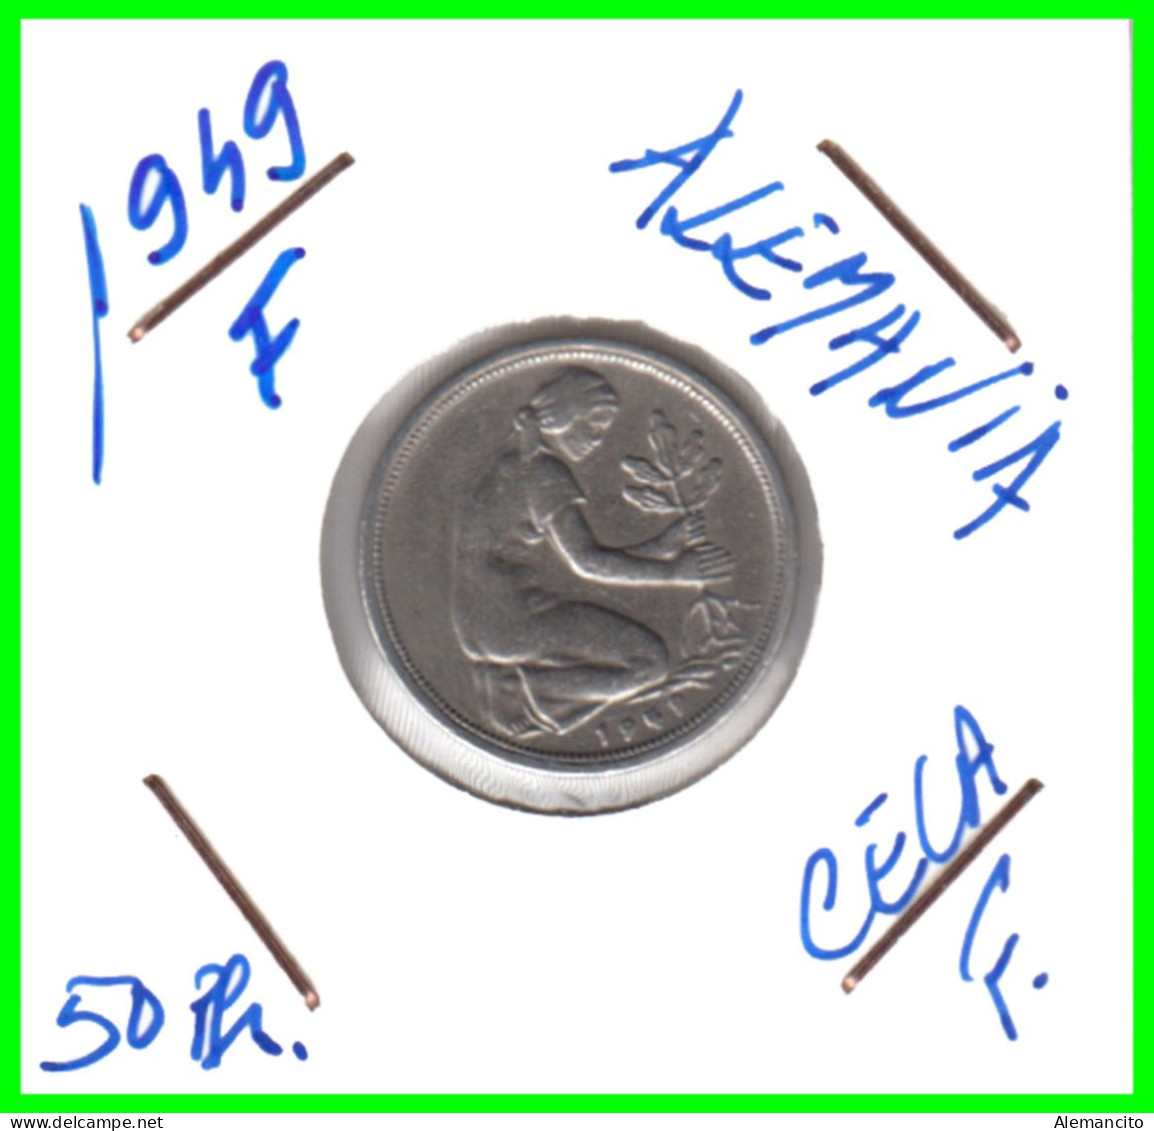 ALEMANIA -DEUTSCHLAND - GERMANY-MONEDA DE LA REPUBLICA FEDERAL DE ALEMANIA DE 50 Pfn-DEL AÑO - 1949 CECA - F - STUTTGART - 50 Pfennig